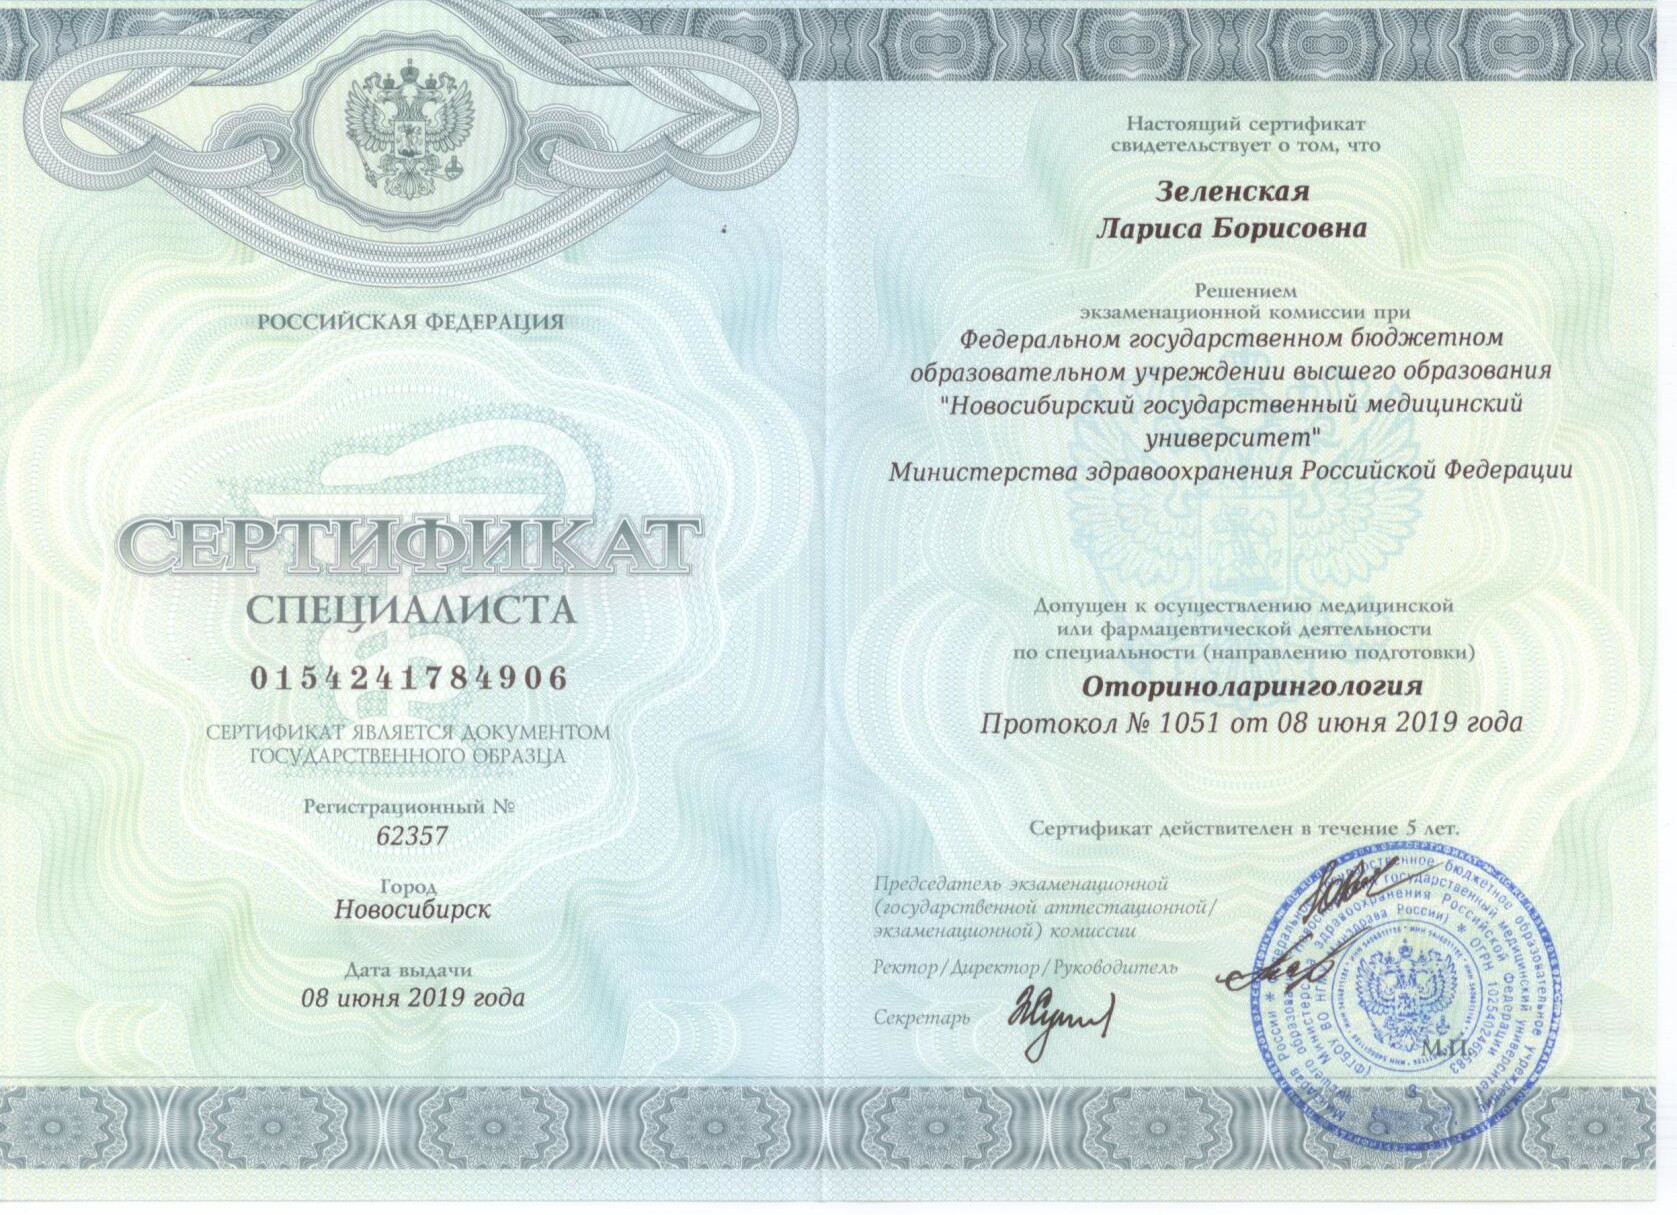 Оториноларингология. Сертификат специалиста Зеленской Ларисы Борисовны